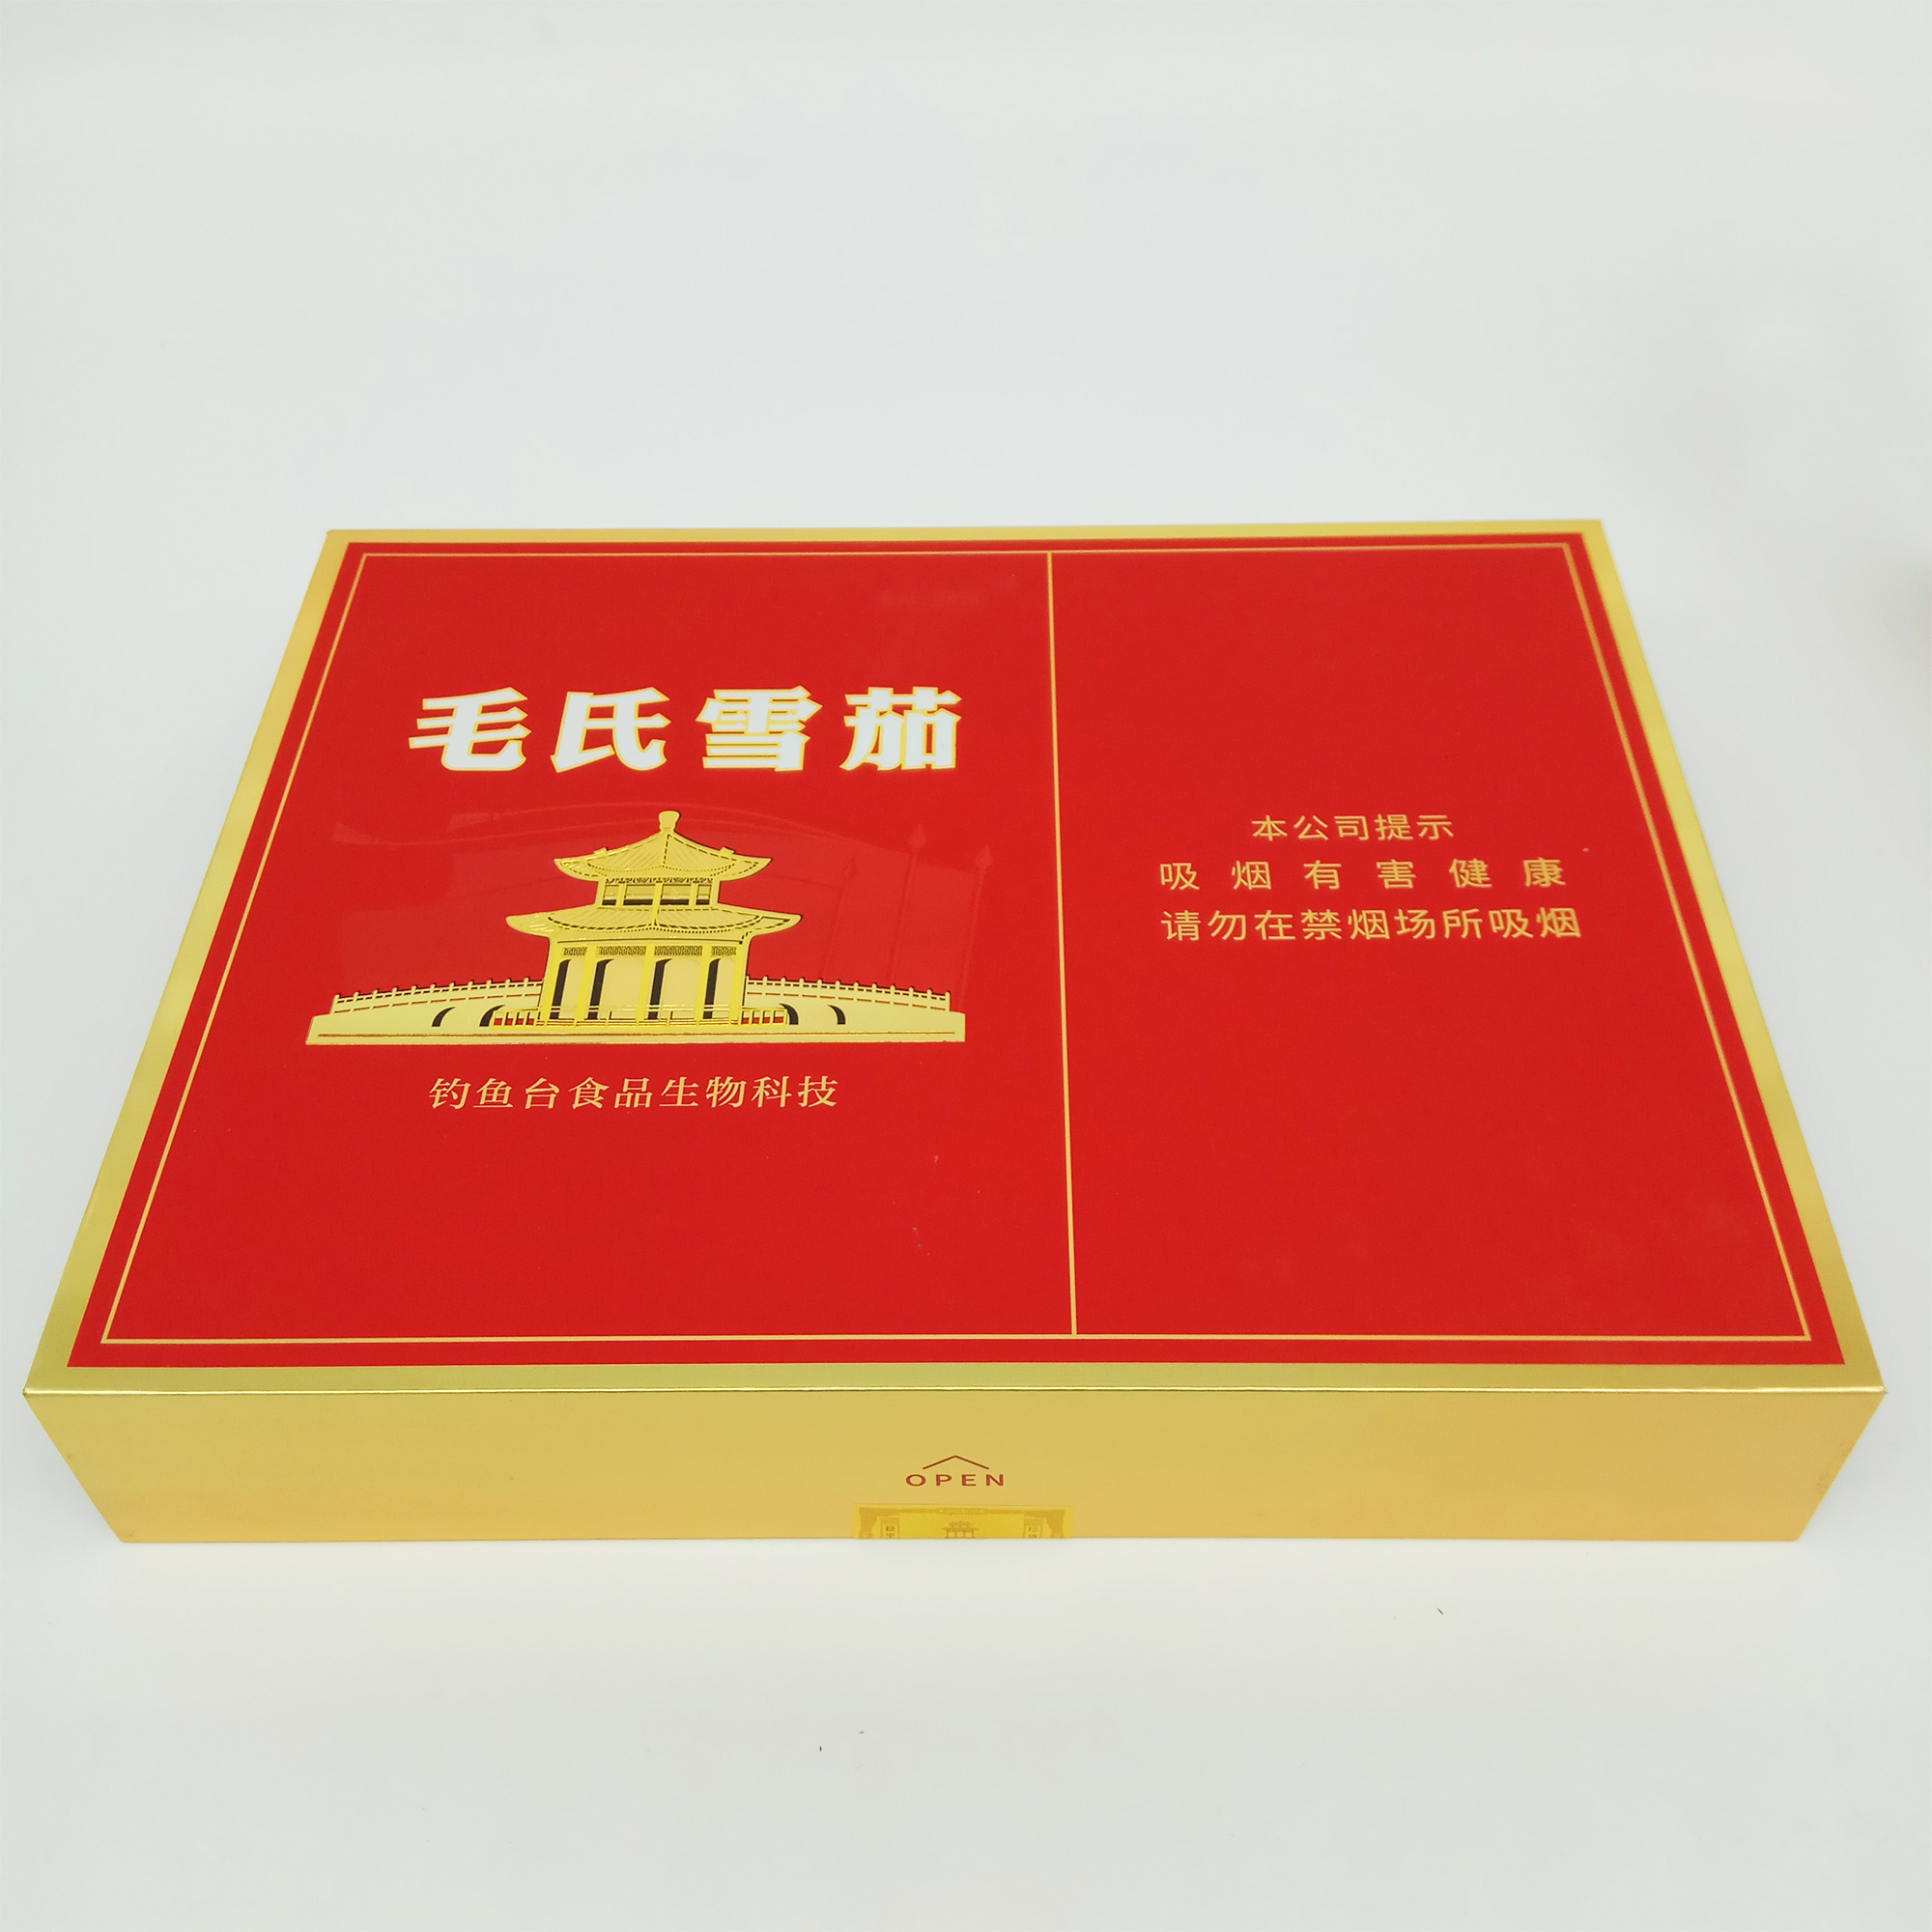 毛氏雪茄 200支/盒 (一盒价)